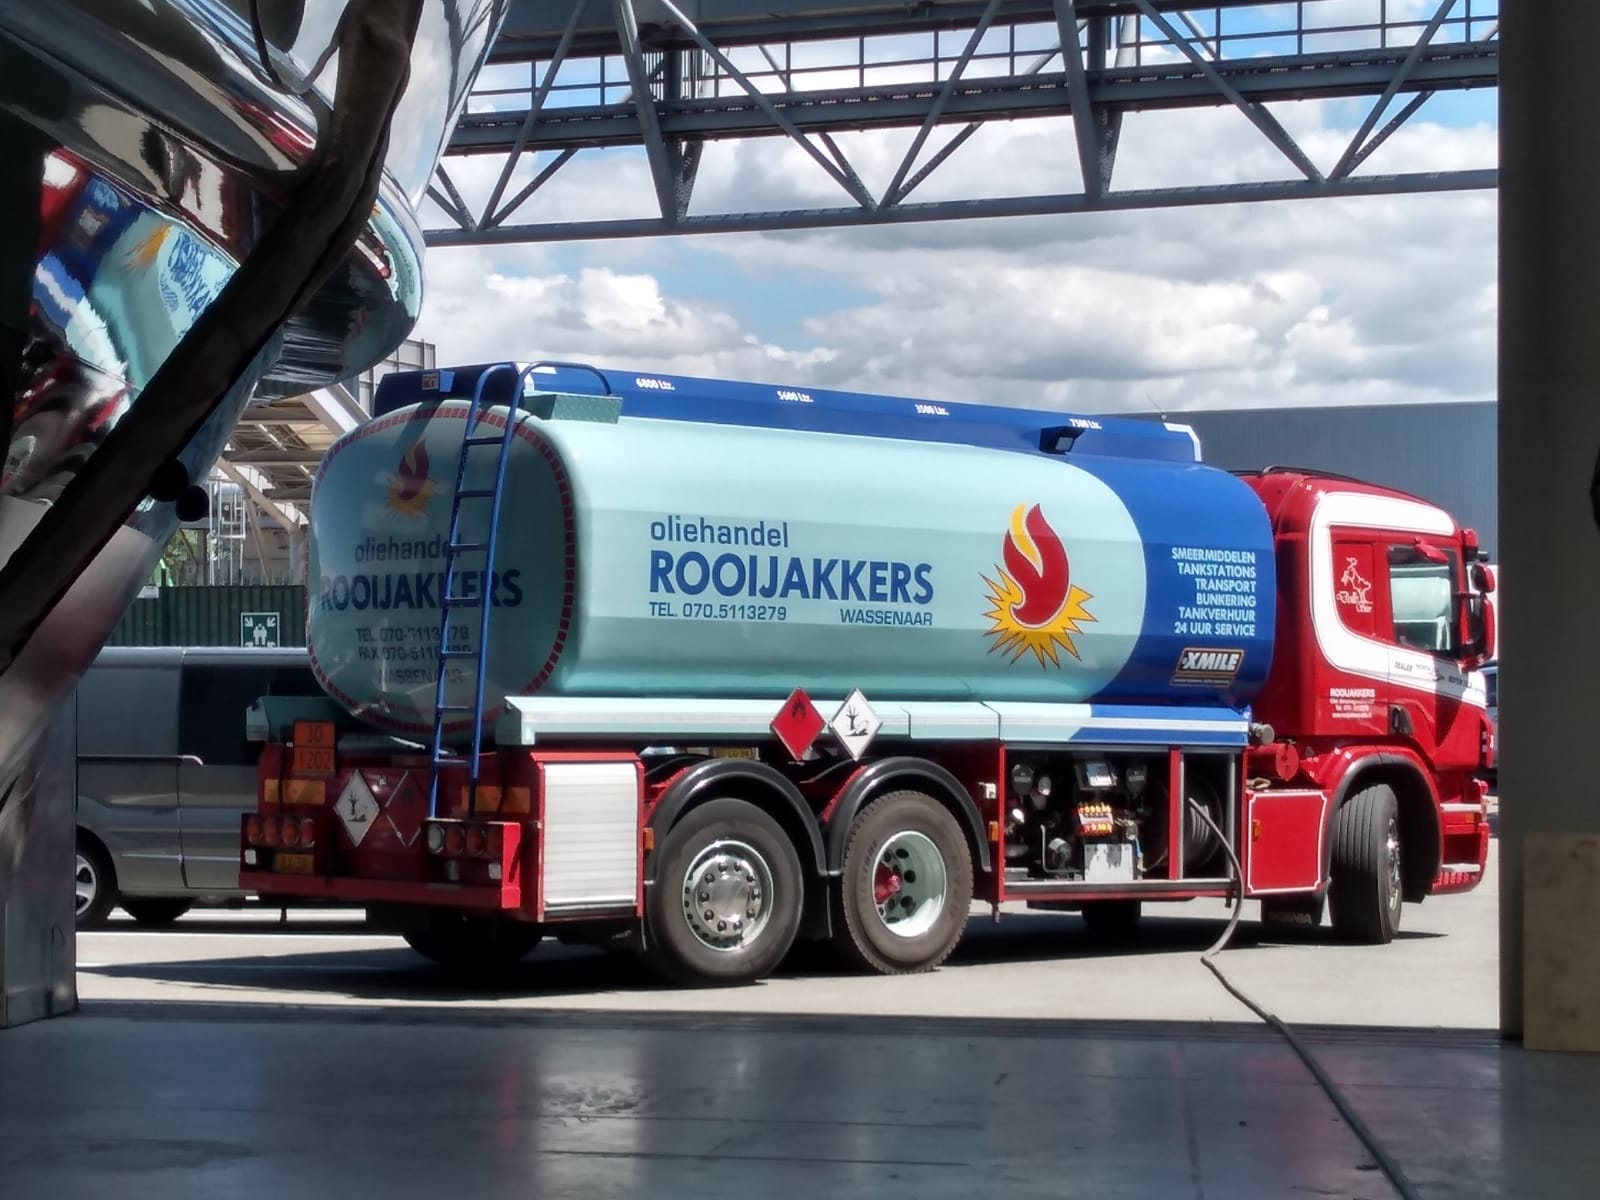 //www.rooijakkers-olie.nl/wp-content/uploads/2019/10/rooijakkers-olie-tankwagen.jpg